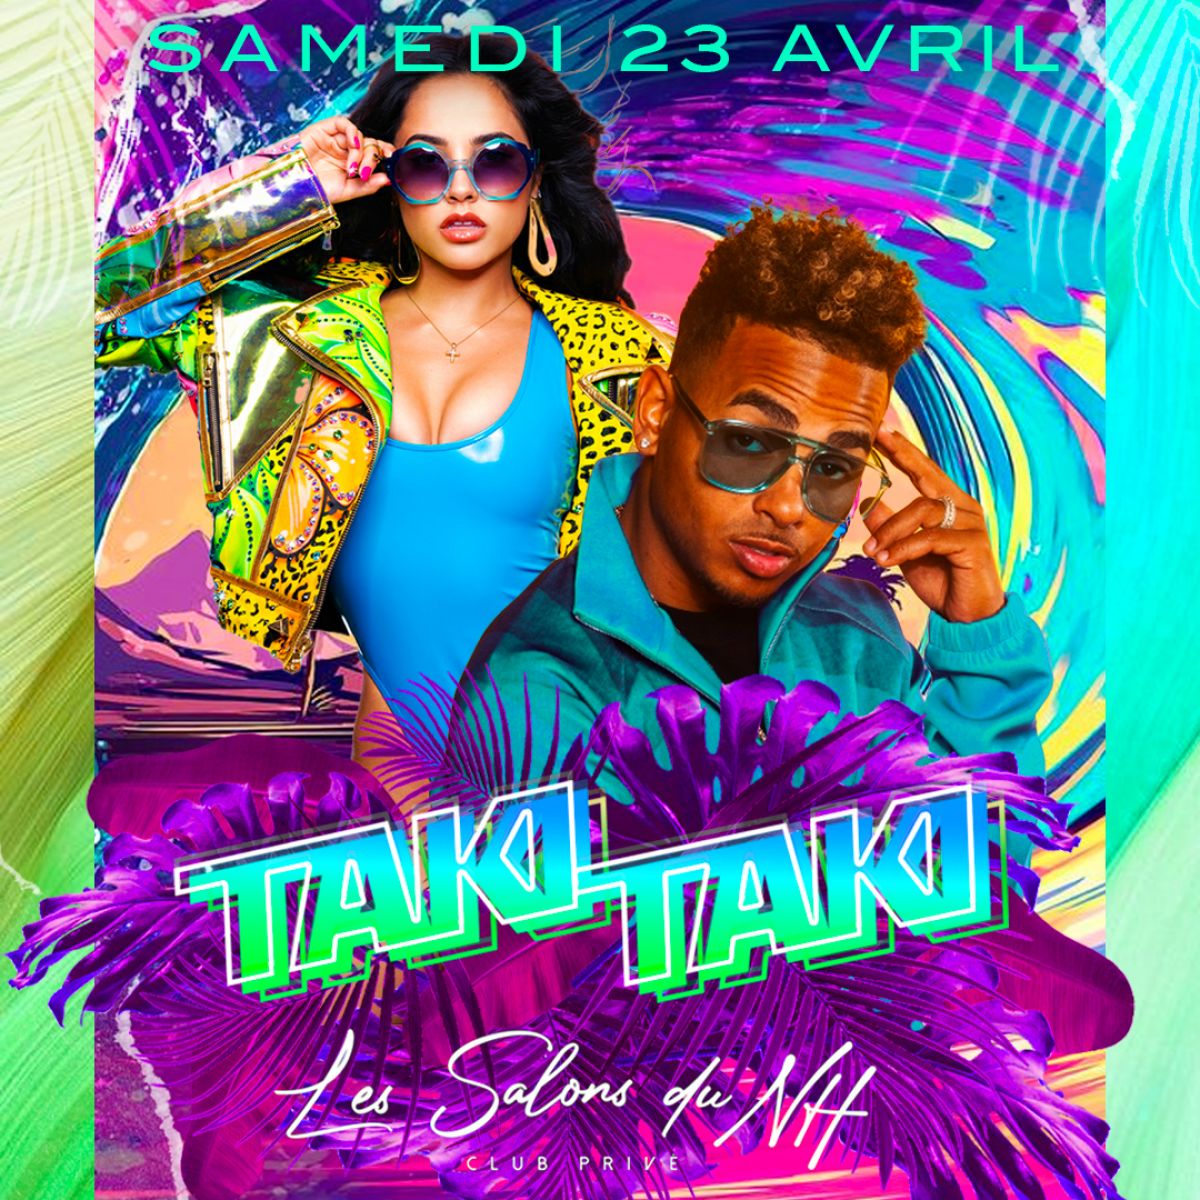 Taki Taki: Latino Vibes vs Hip Hop - Samedi 23 avril